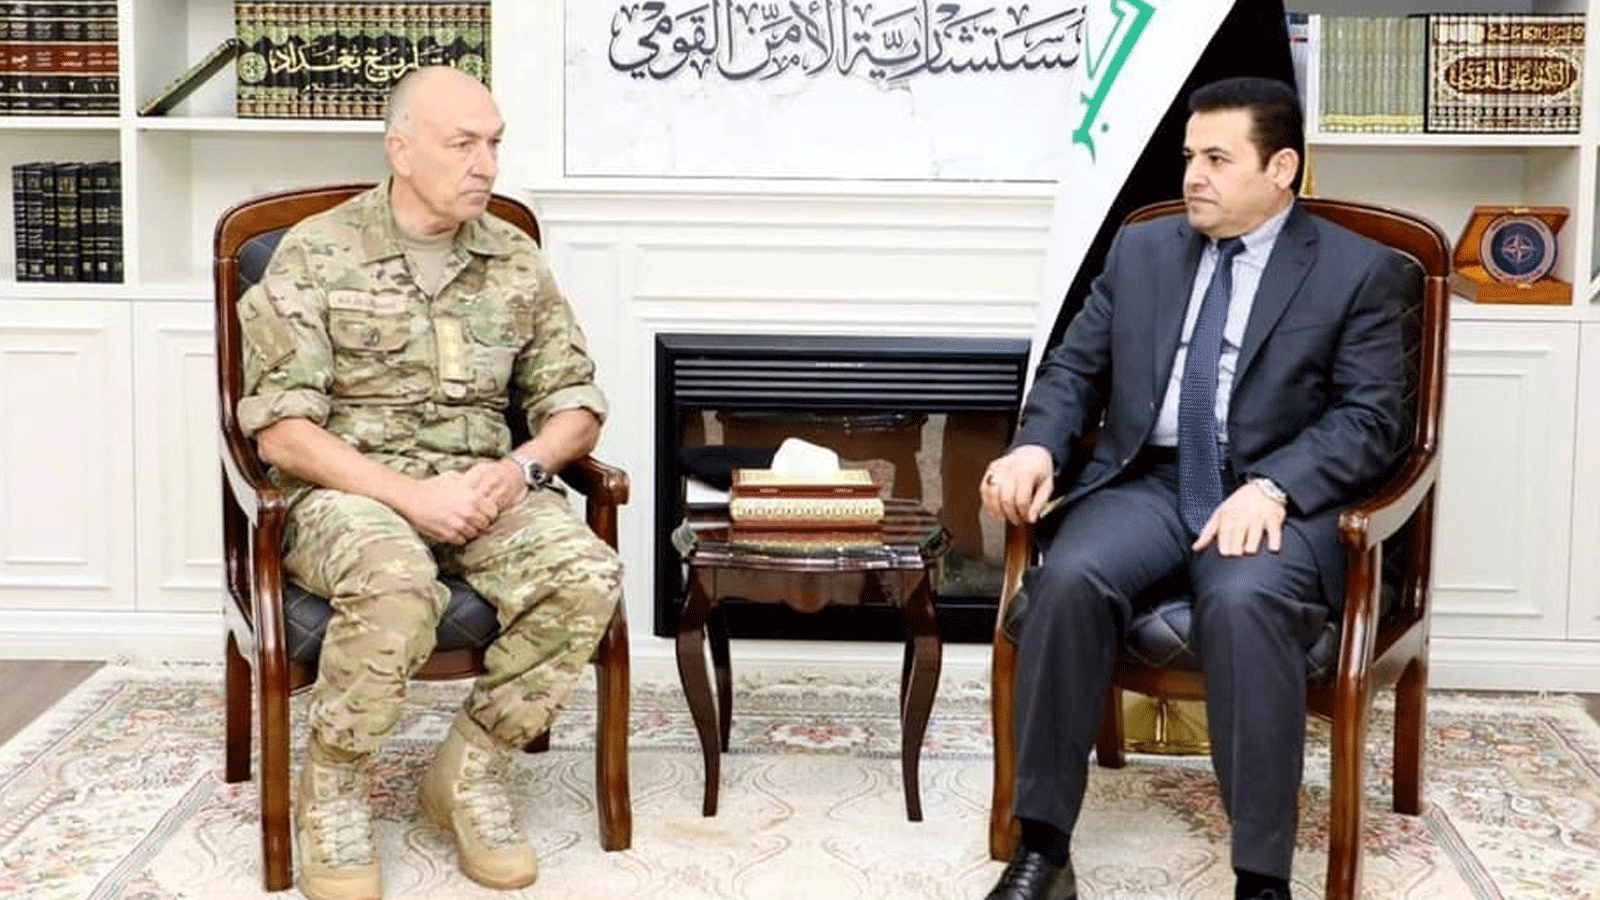 مستشار الأمن القومي العراقي مجتمعاً في بغداد الاحد 26 كانون الاول/ ديسمبر مع قائد بعثة الناتو في العراق (مكتبه)